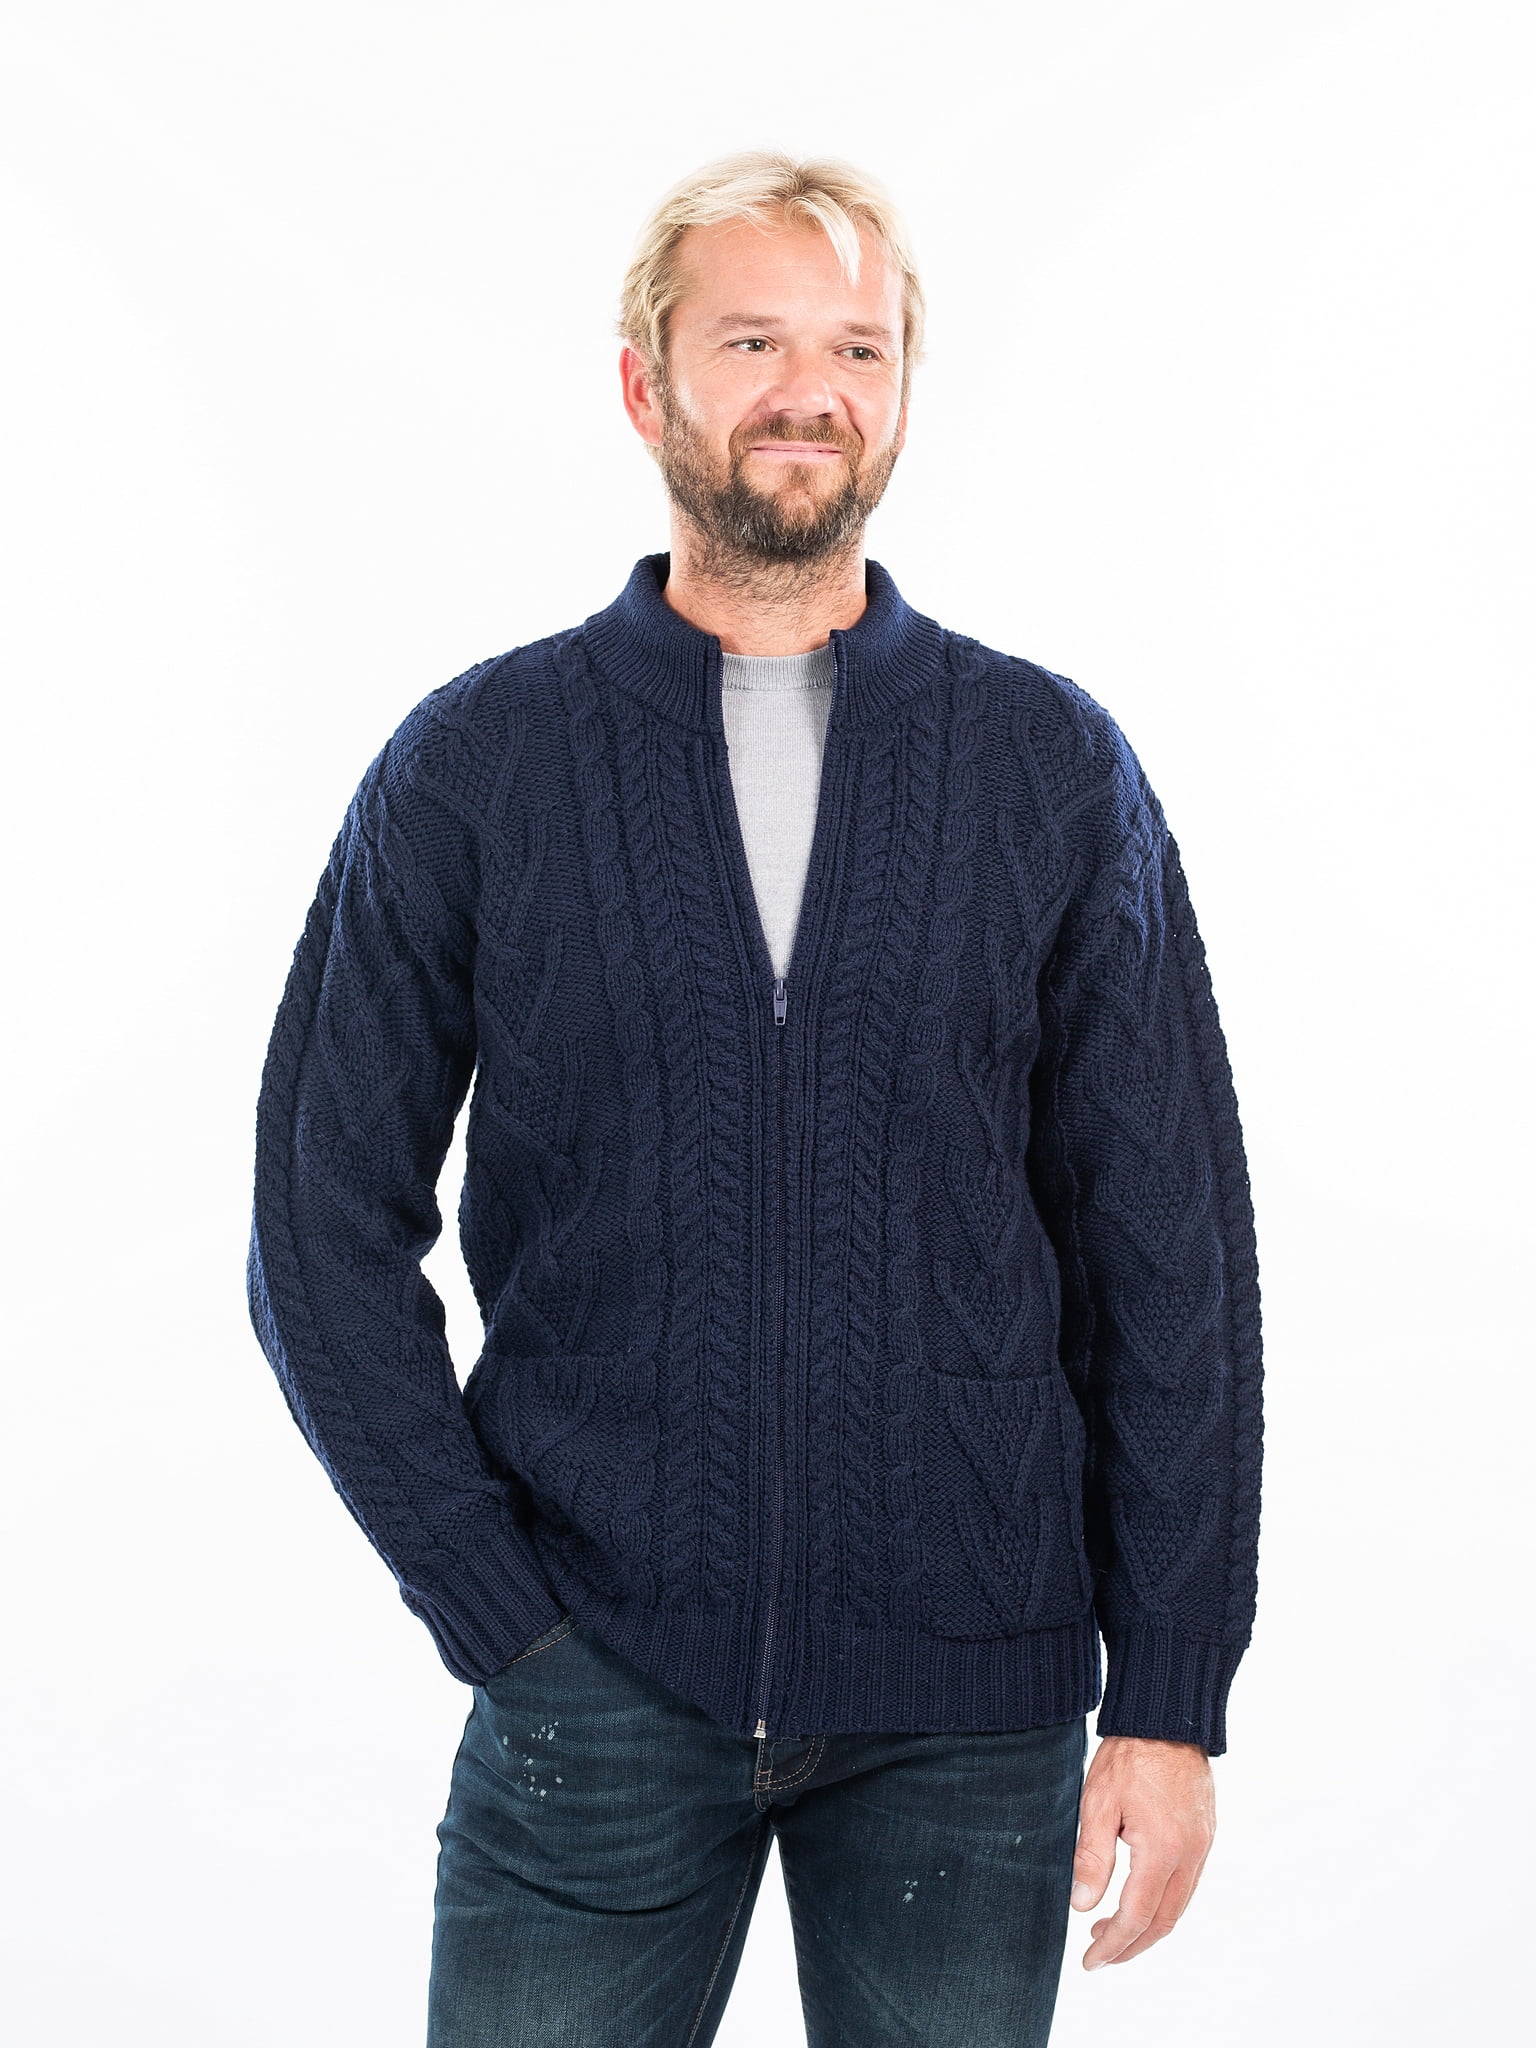 SAOL - SAOL Irish Cardigan Sweater for Men 100% Merino Wool Cable Knit ...